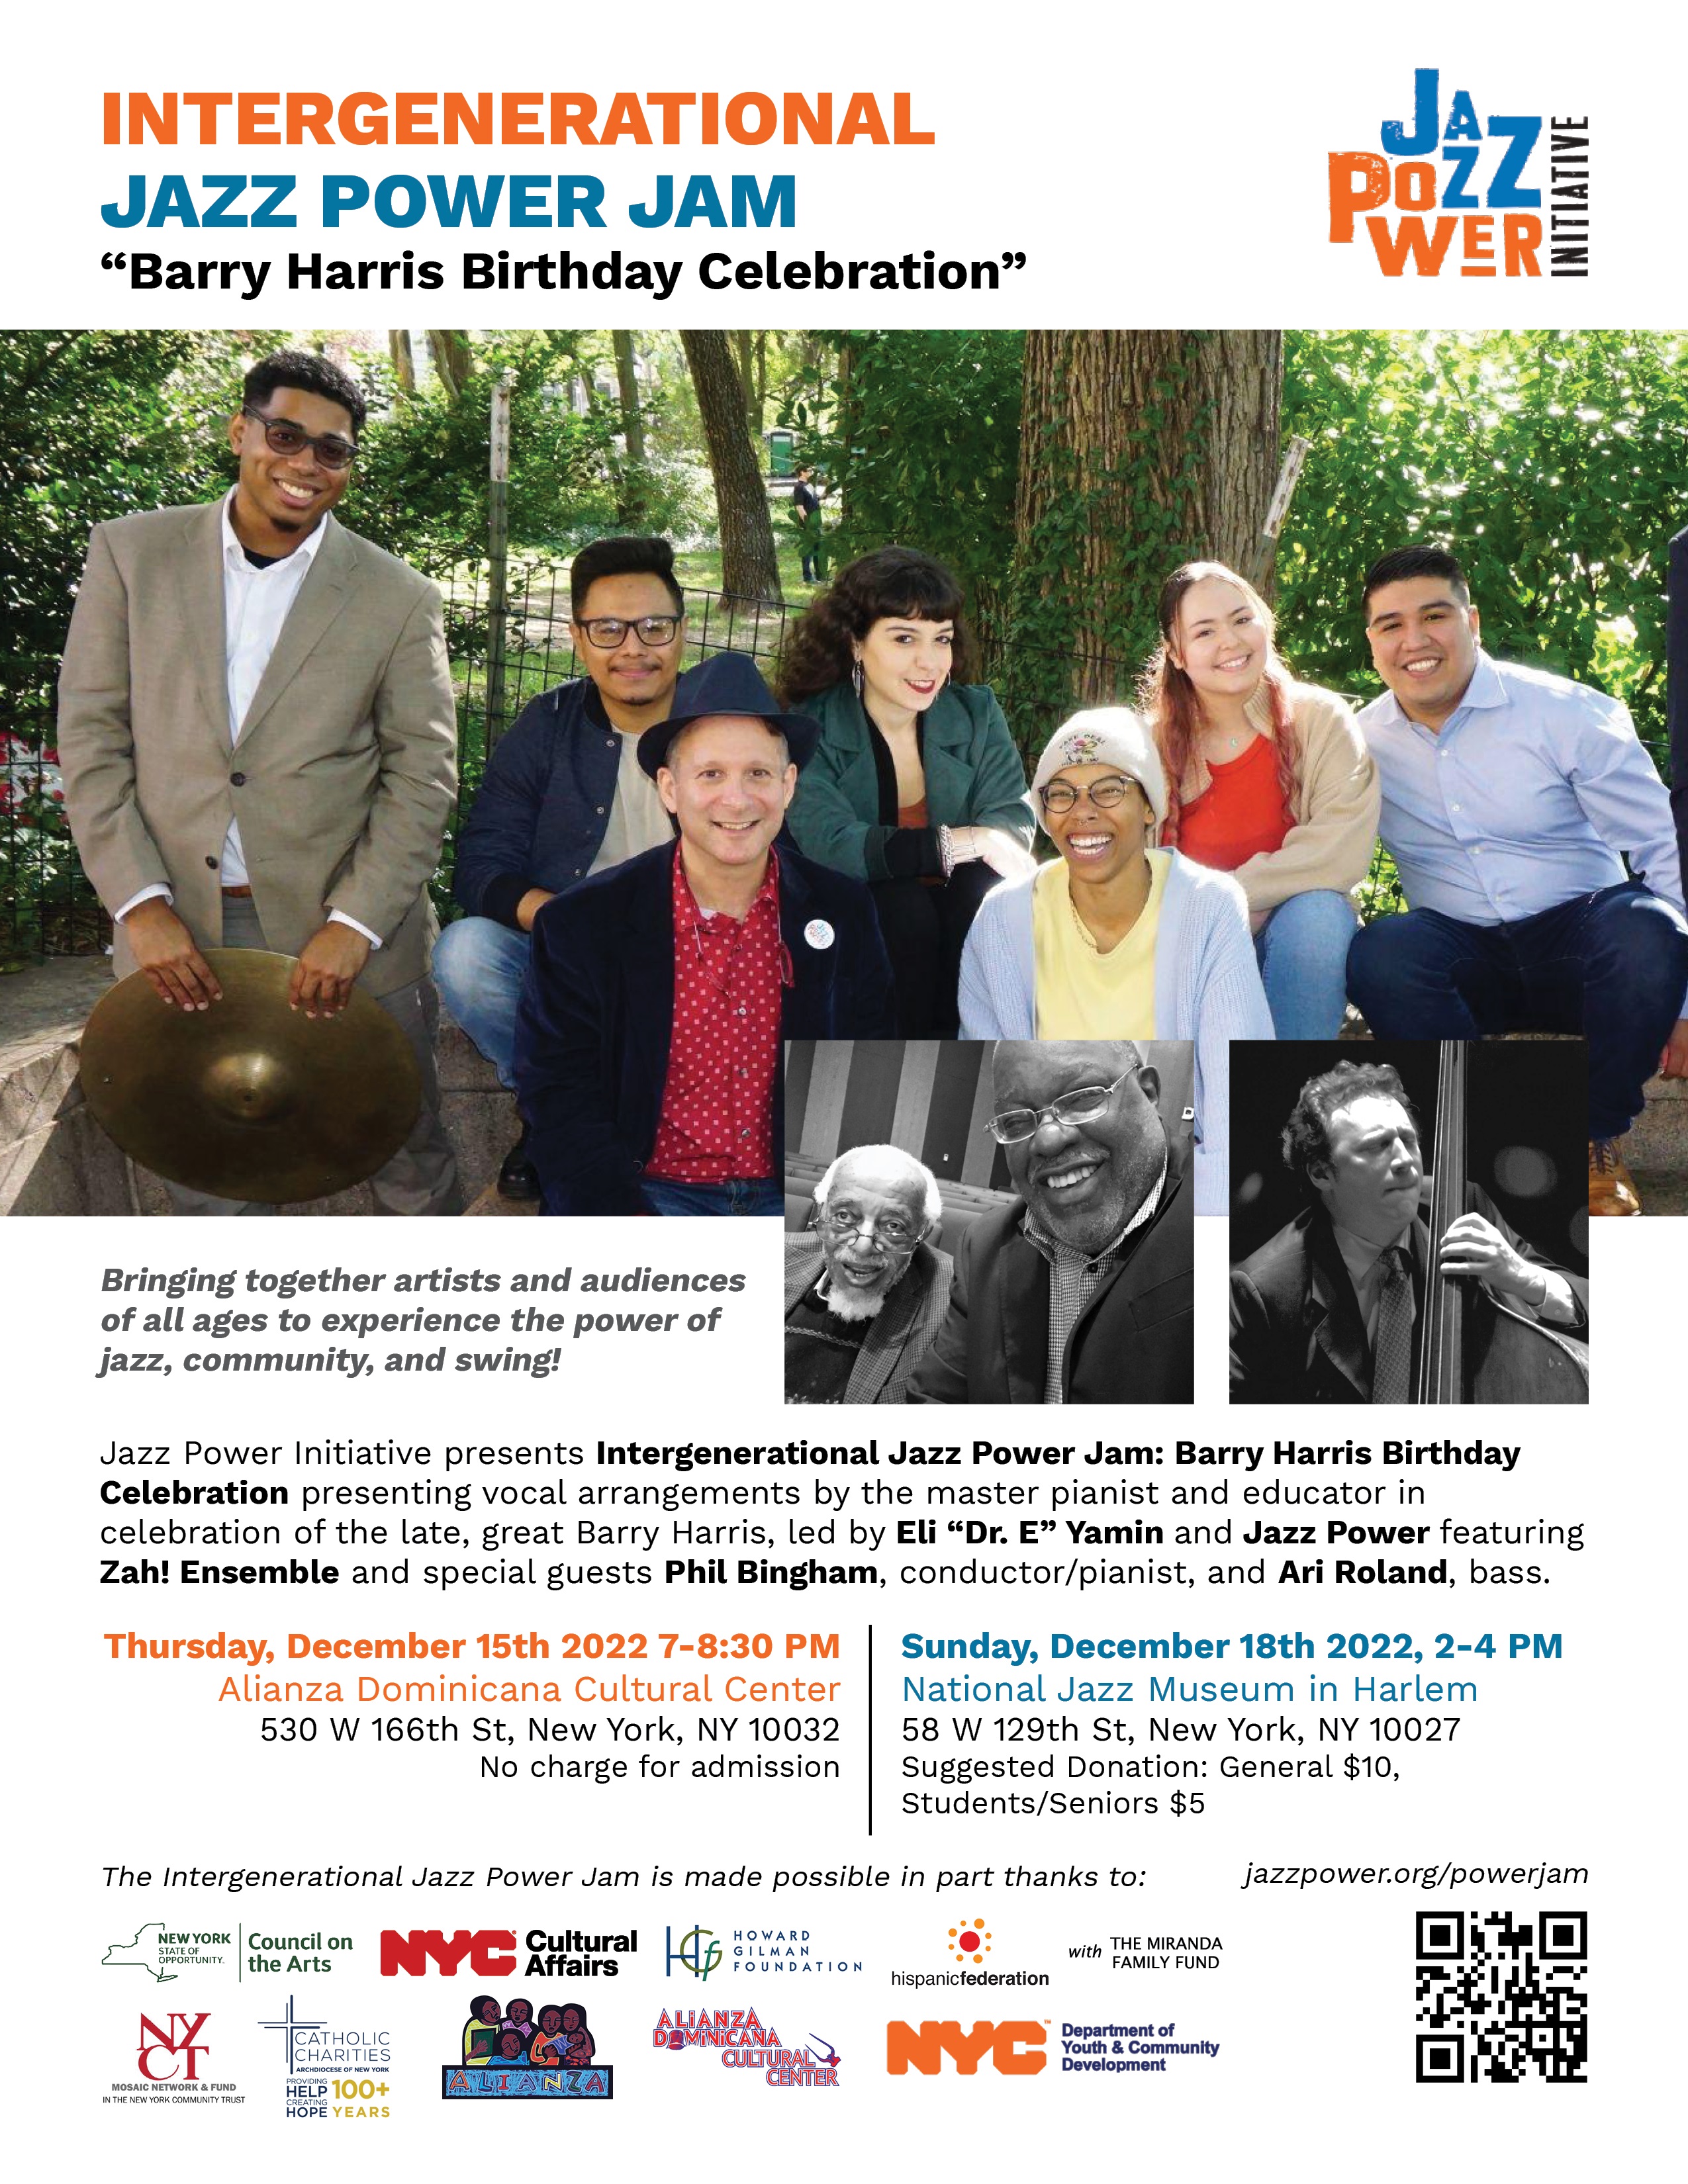 Celebrate Barry Harris with Jazz Power Initiative!